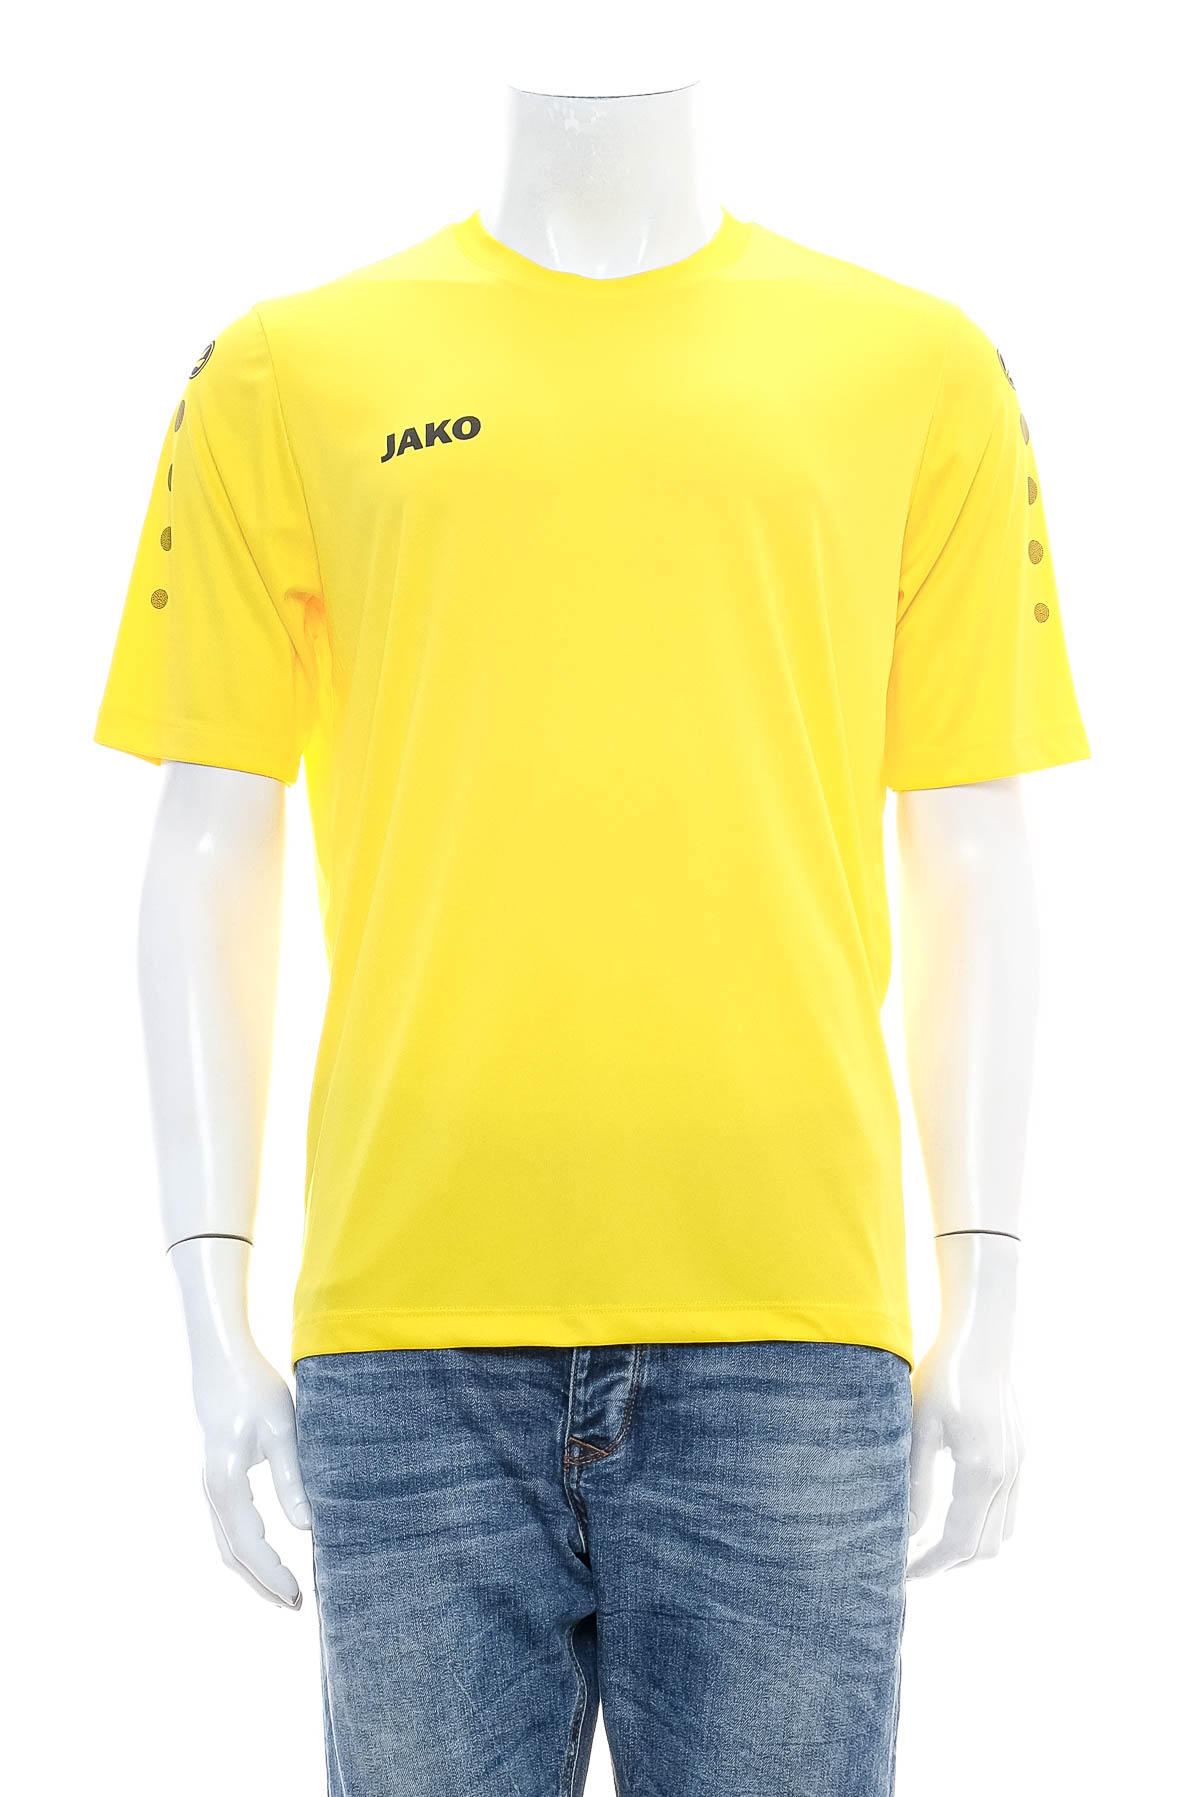 Αντρική μπλούζα - Jako - 0